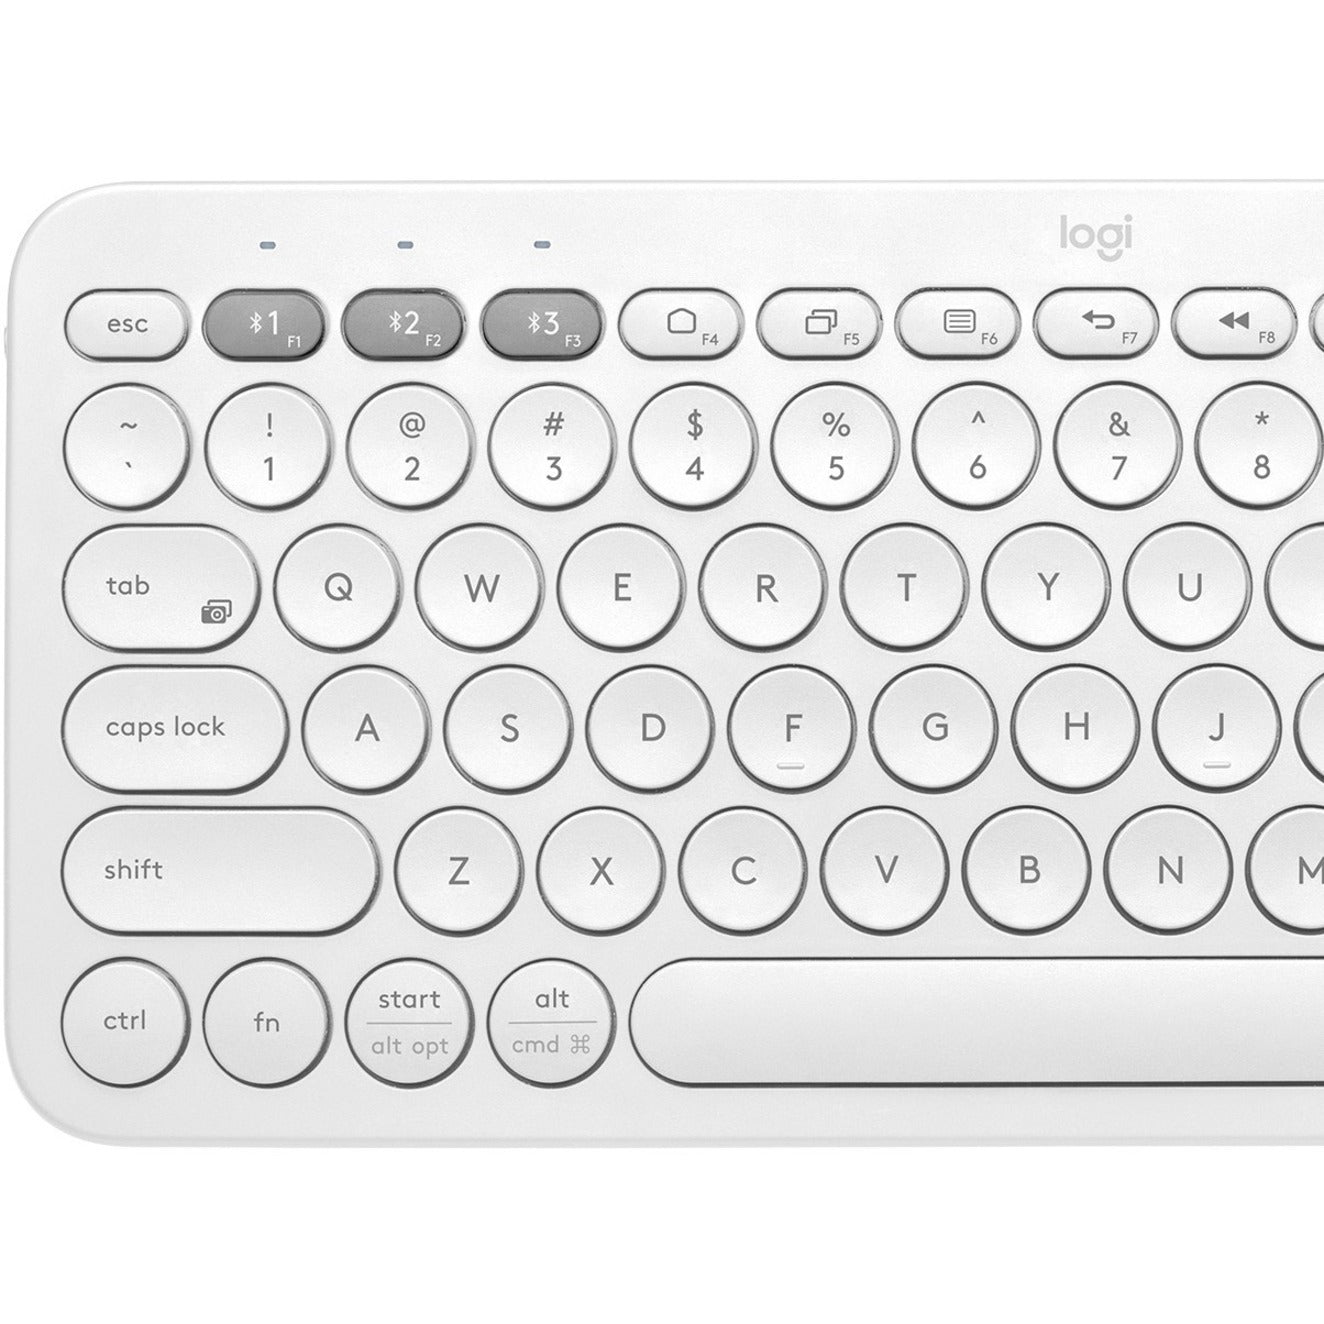 Logitech 920-009600 K380 Multi-device Bluetooth Keyboard, Lightweight, Low-profile Keys, Slim, Quiet Keys